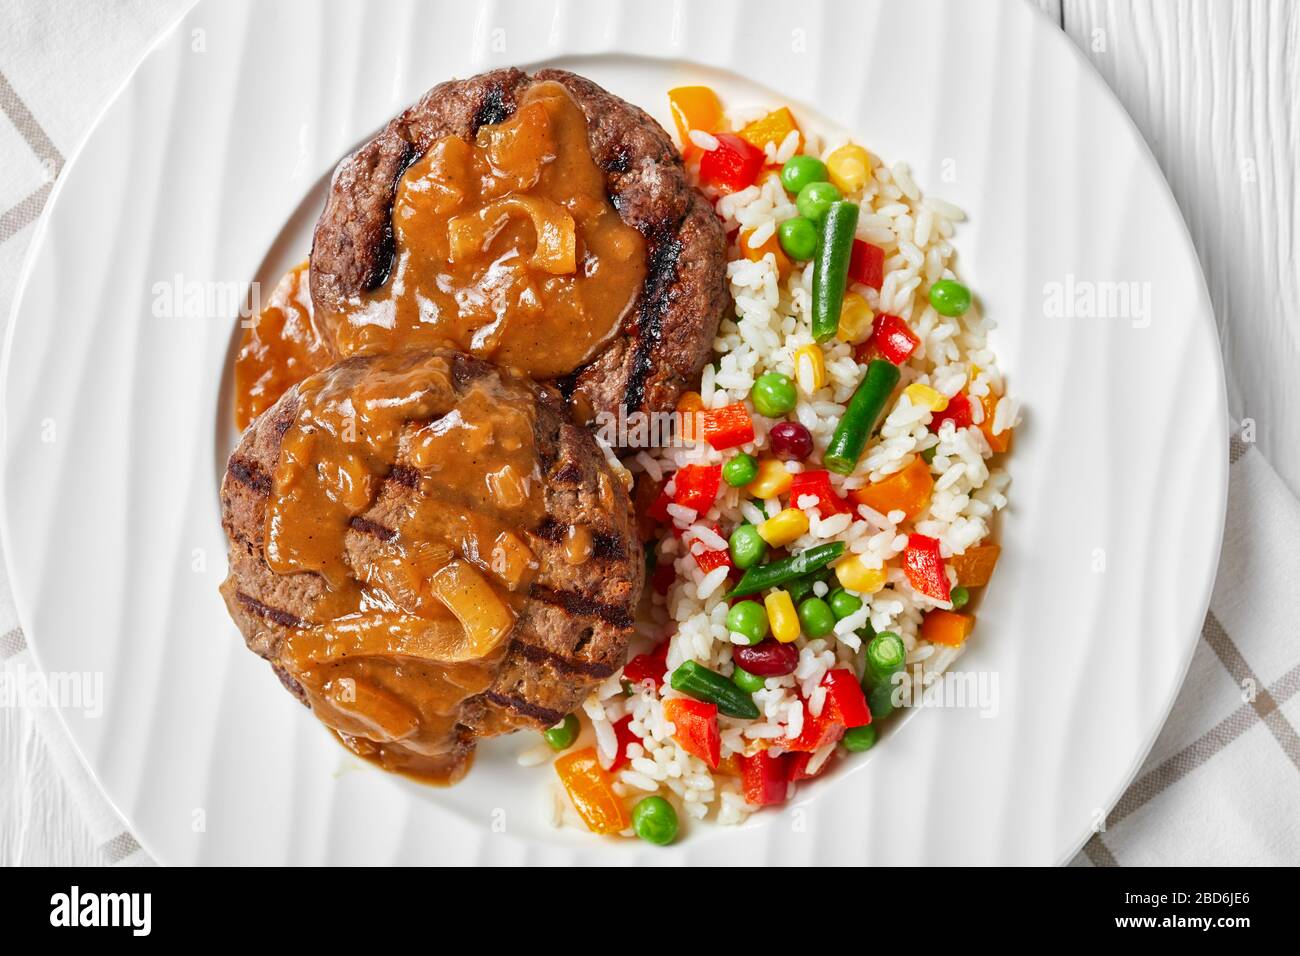 Gegrillte Hamburger Steaks mit Zwiebelgravy und Reis gemischt mit Gemüse auf einem weißen Teller auf einem Holztisch, flach gelegt, Nahaufnahme Stockfoto